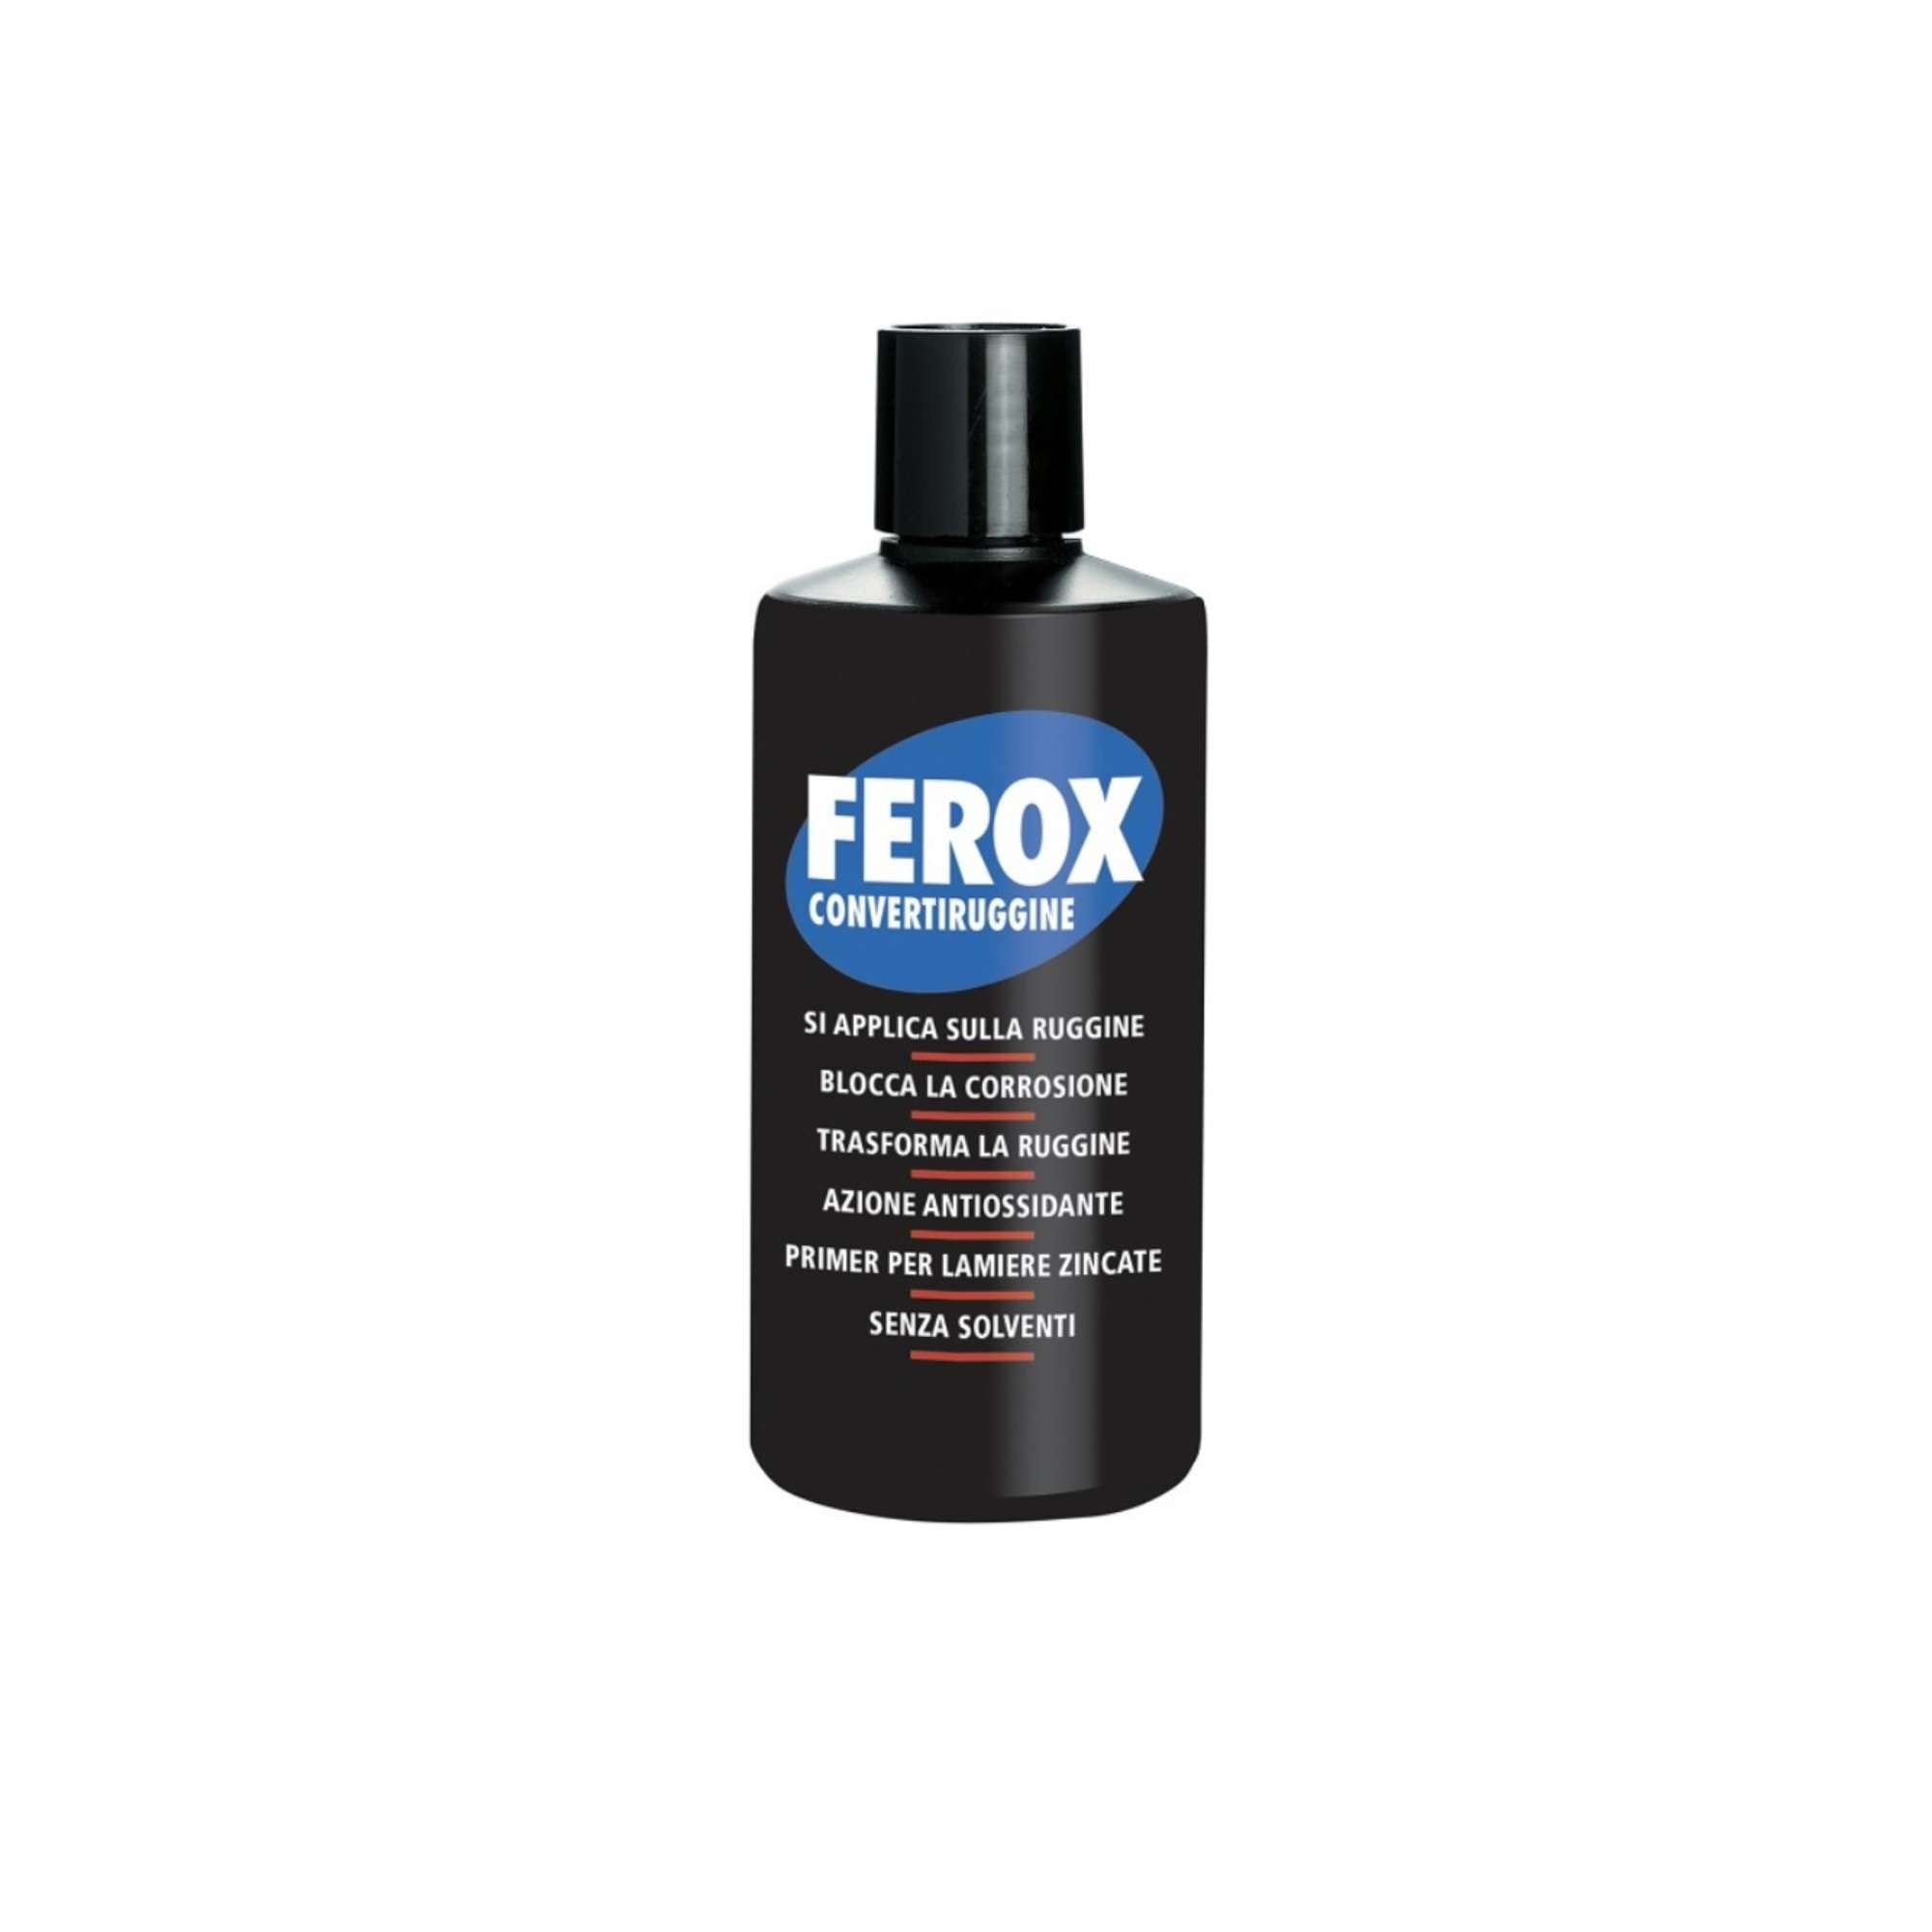 Ferox Rust Converter - Arexons